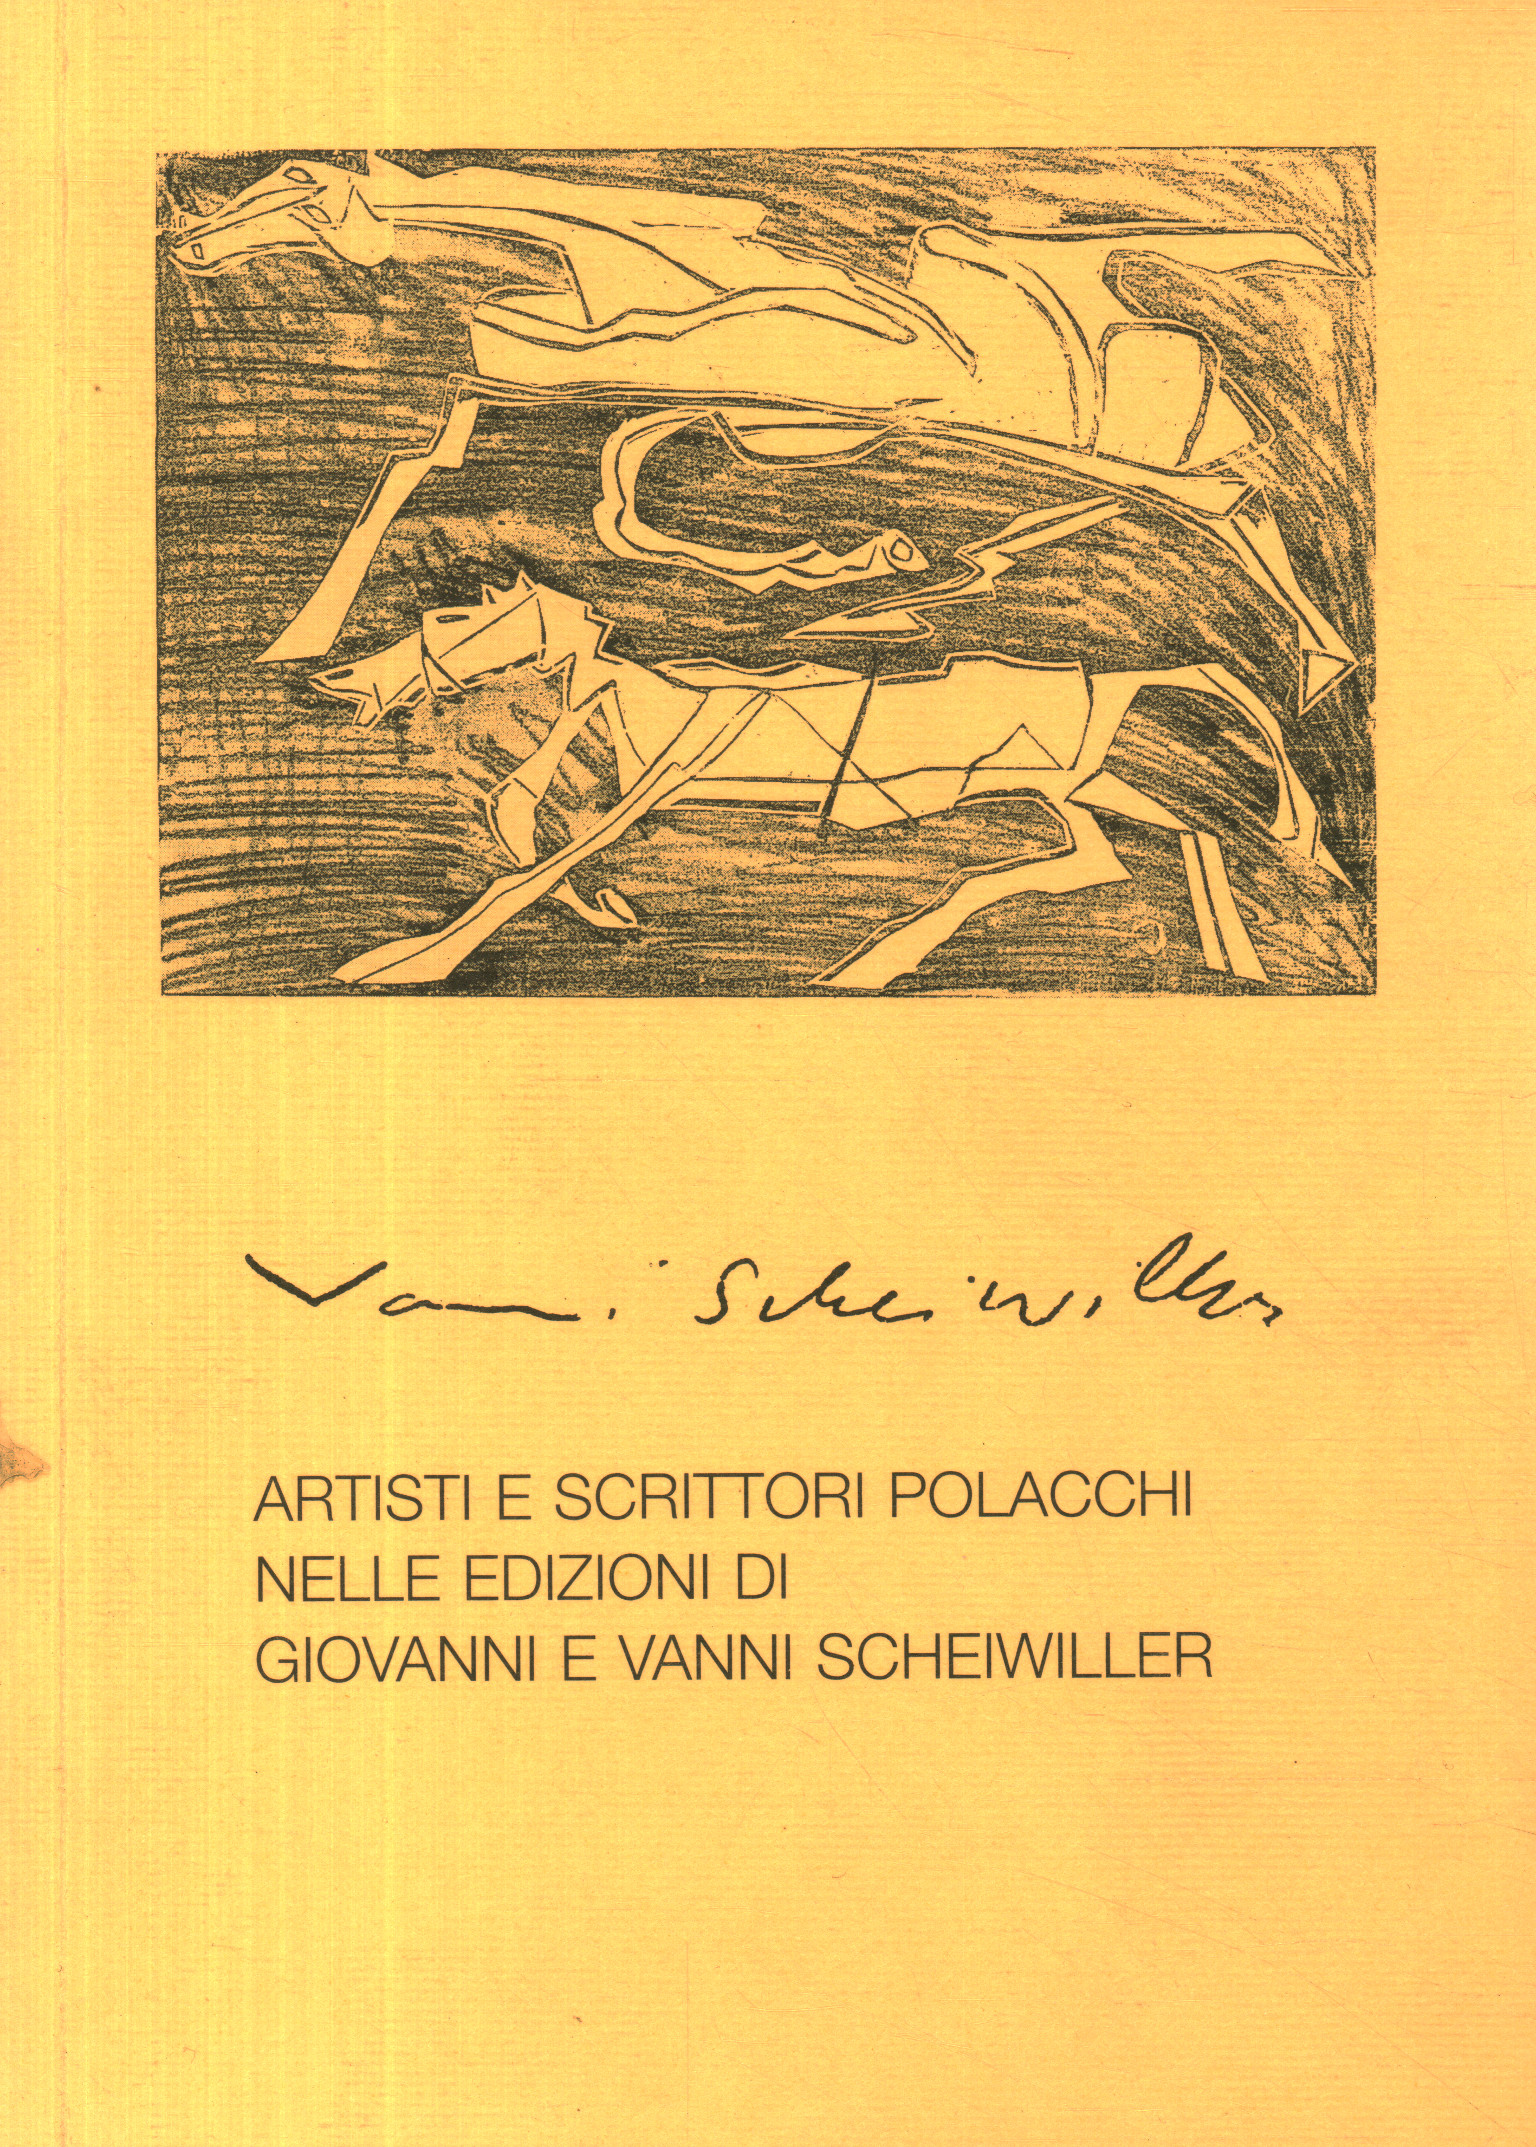 Polnische Künstler und Schriftsteller in den Editionen